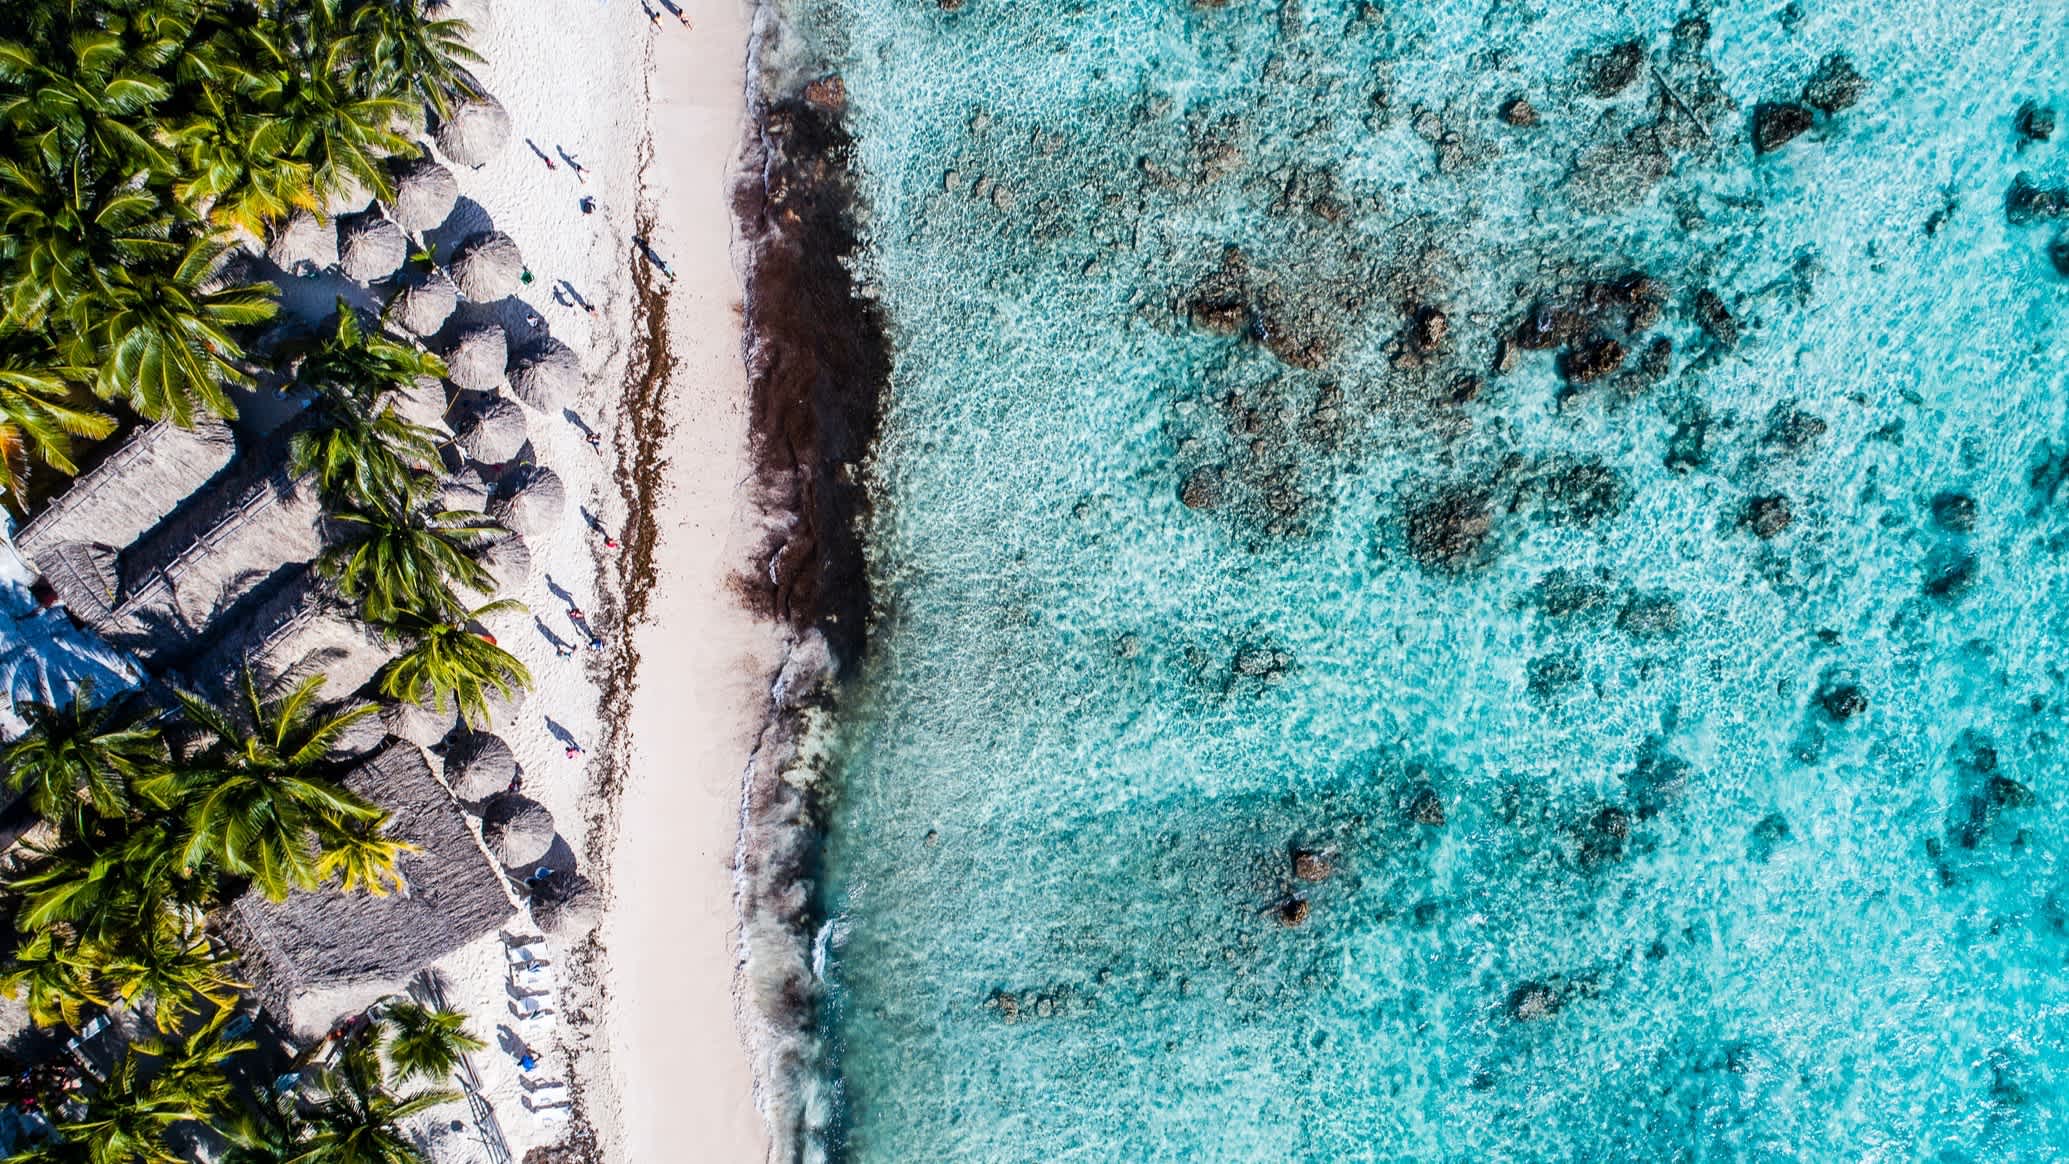 Luftaufnahme des Strandes von Chen Rio in Cozumel, Mexiko, bei Sonnenschein und mit Blick auf das Meer sowie Palmen und ein Resort am Strand.